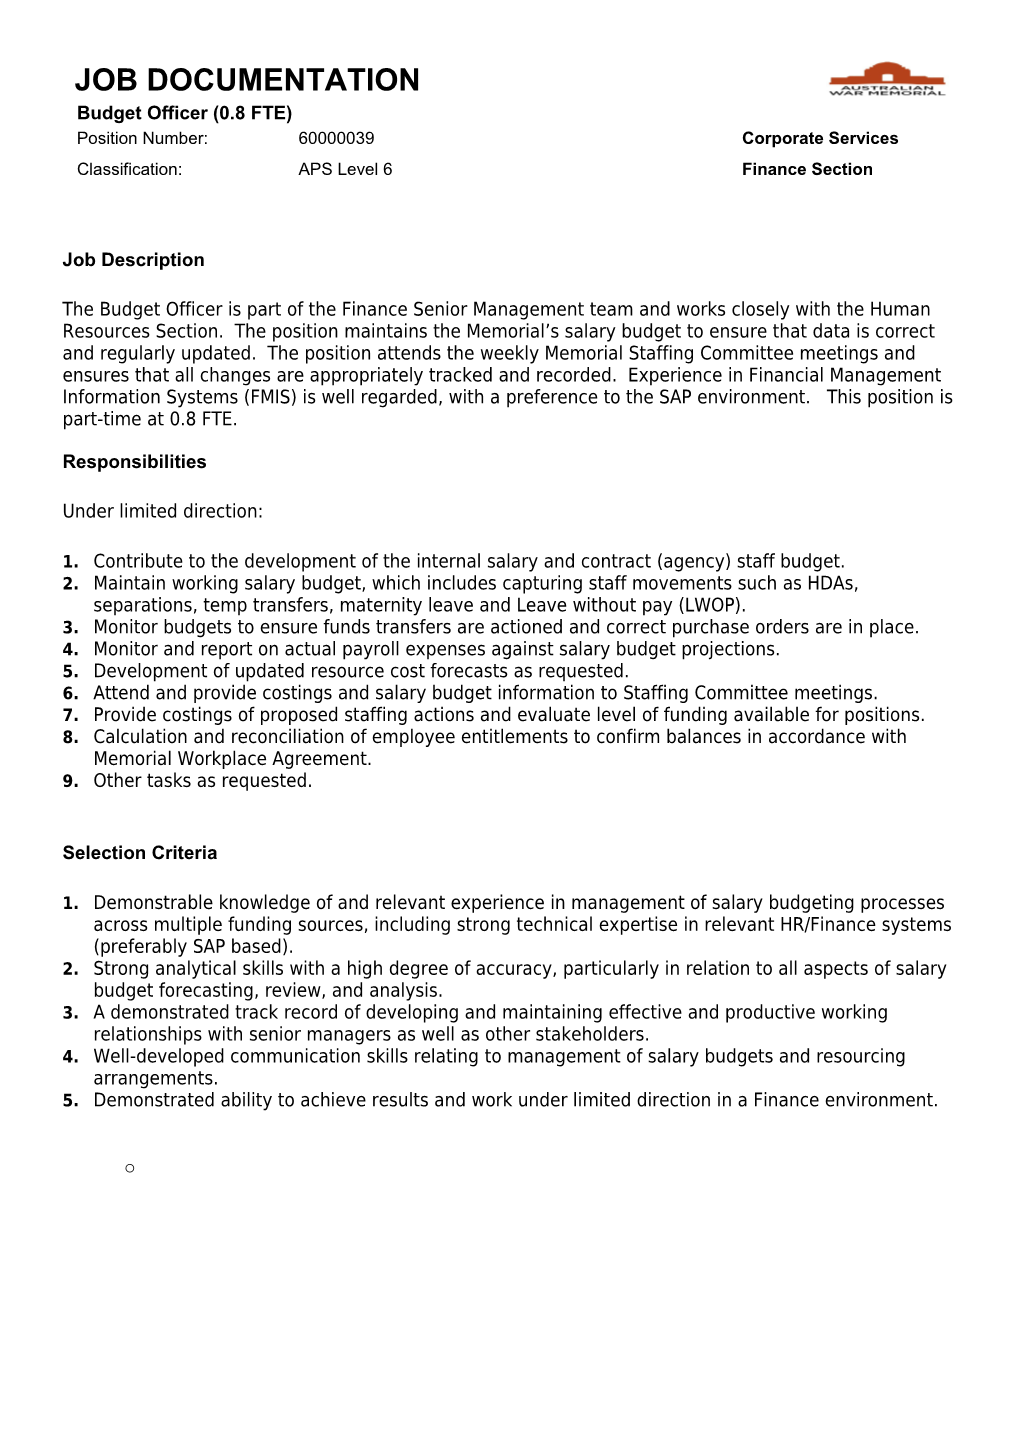 JOB DOCUMENTATION - Budget Officer - APS 6 Finance Officer - 6000039